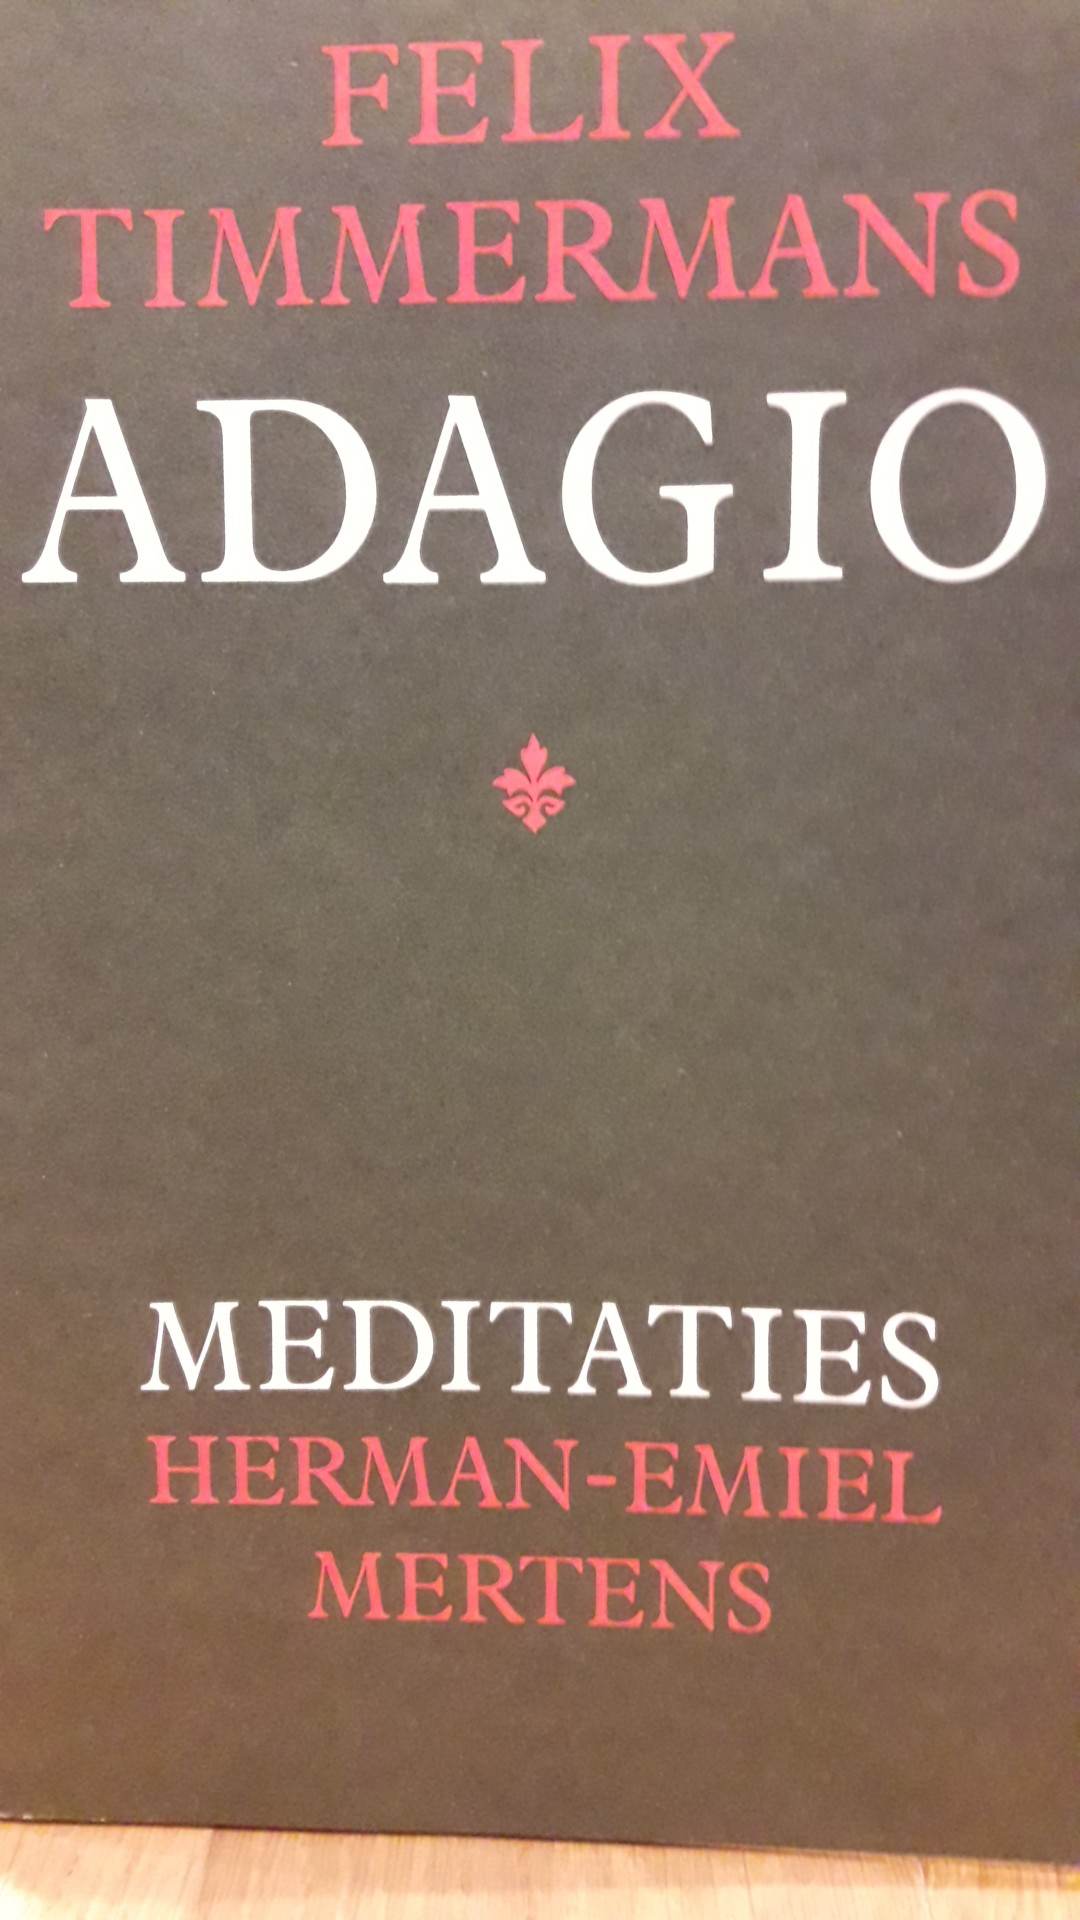 Felix Timmermans - Adagio - Meditaties Herman Emiel Mertens/ 94 blz